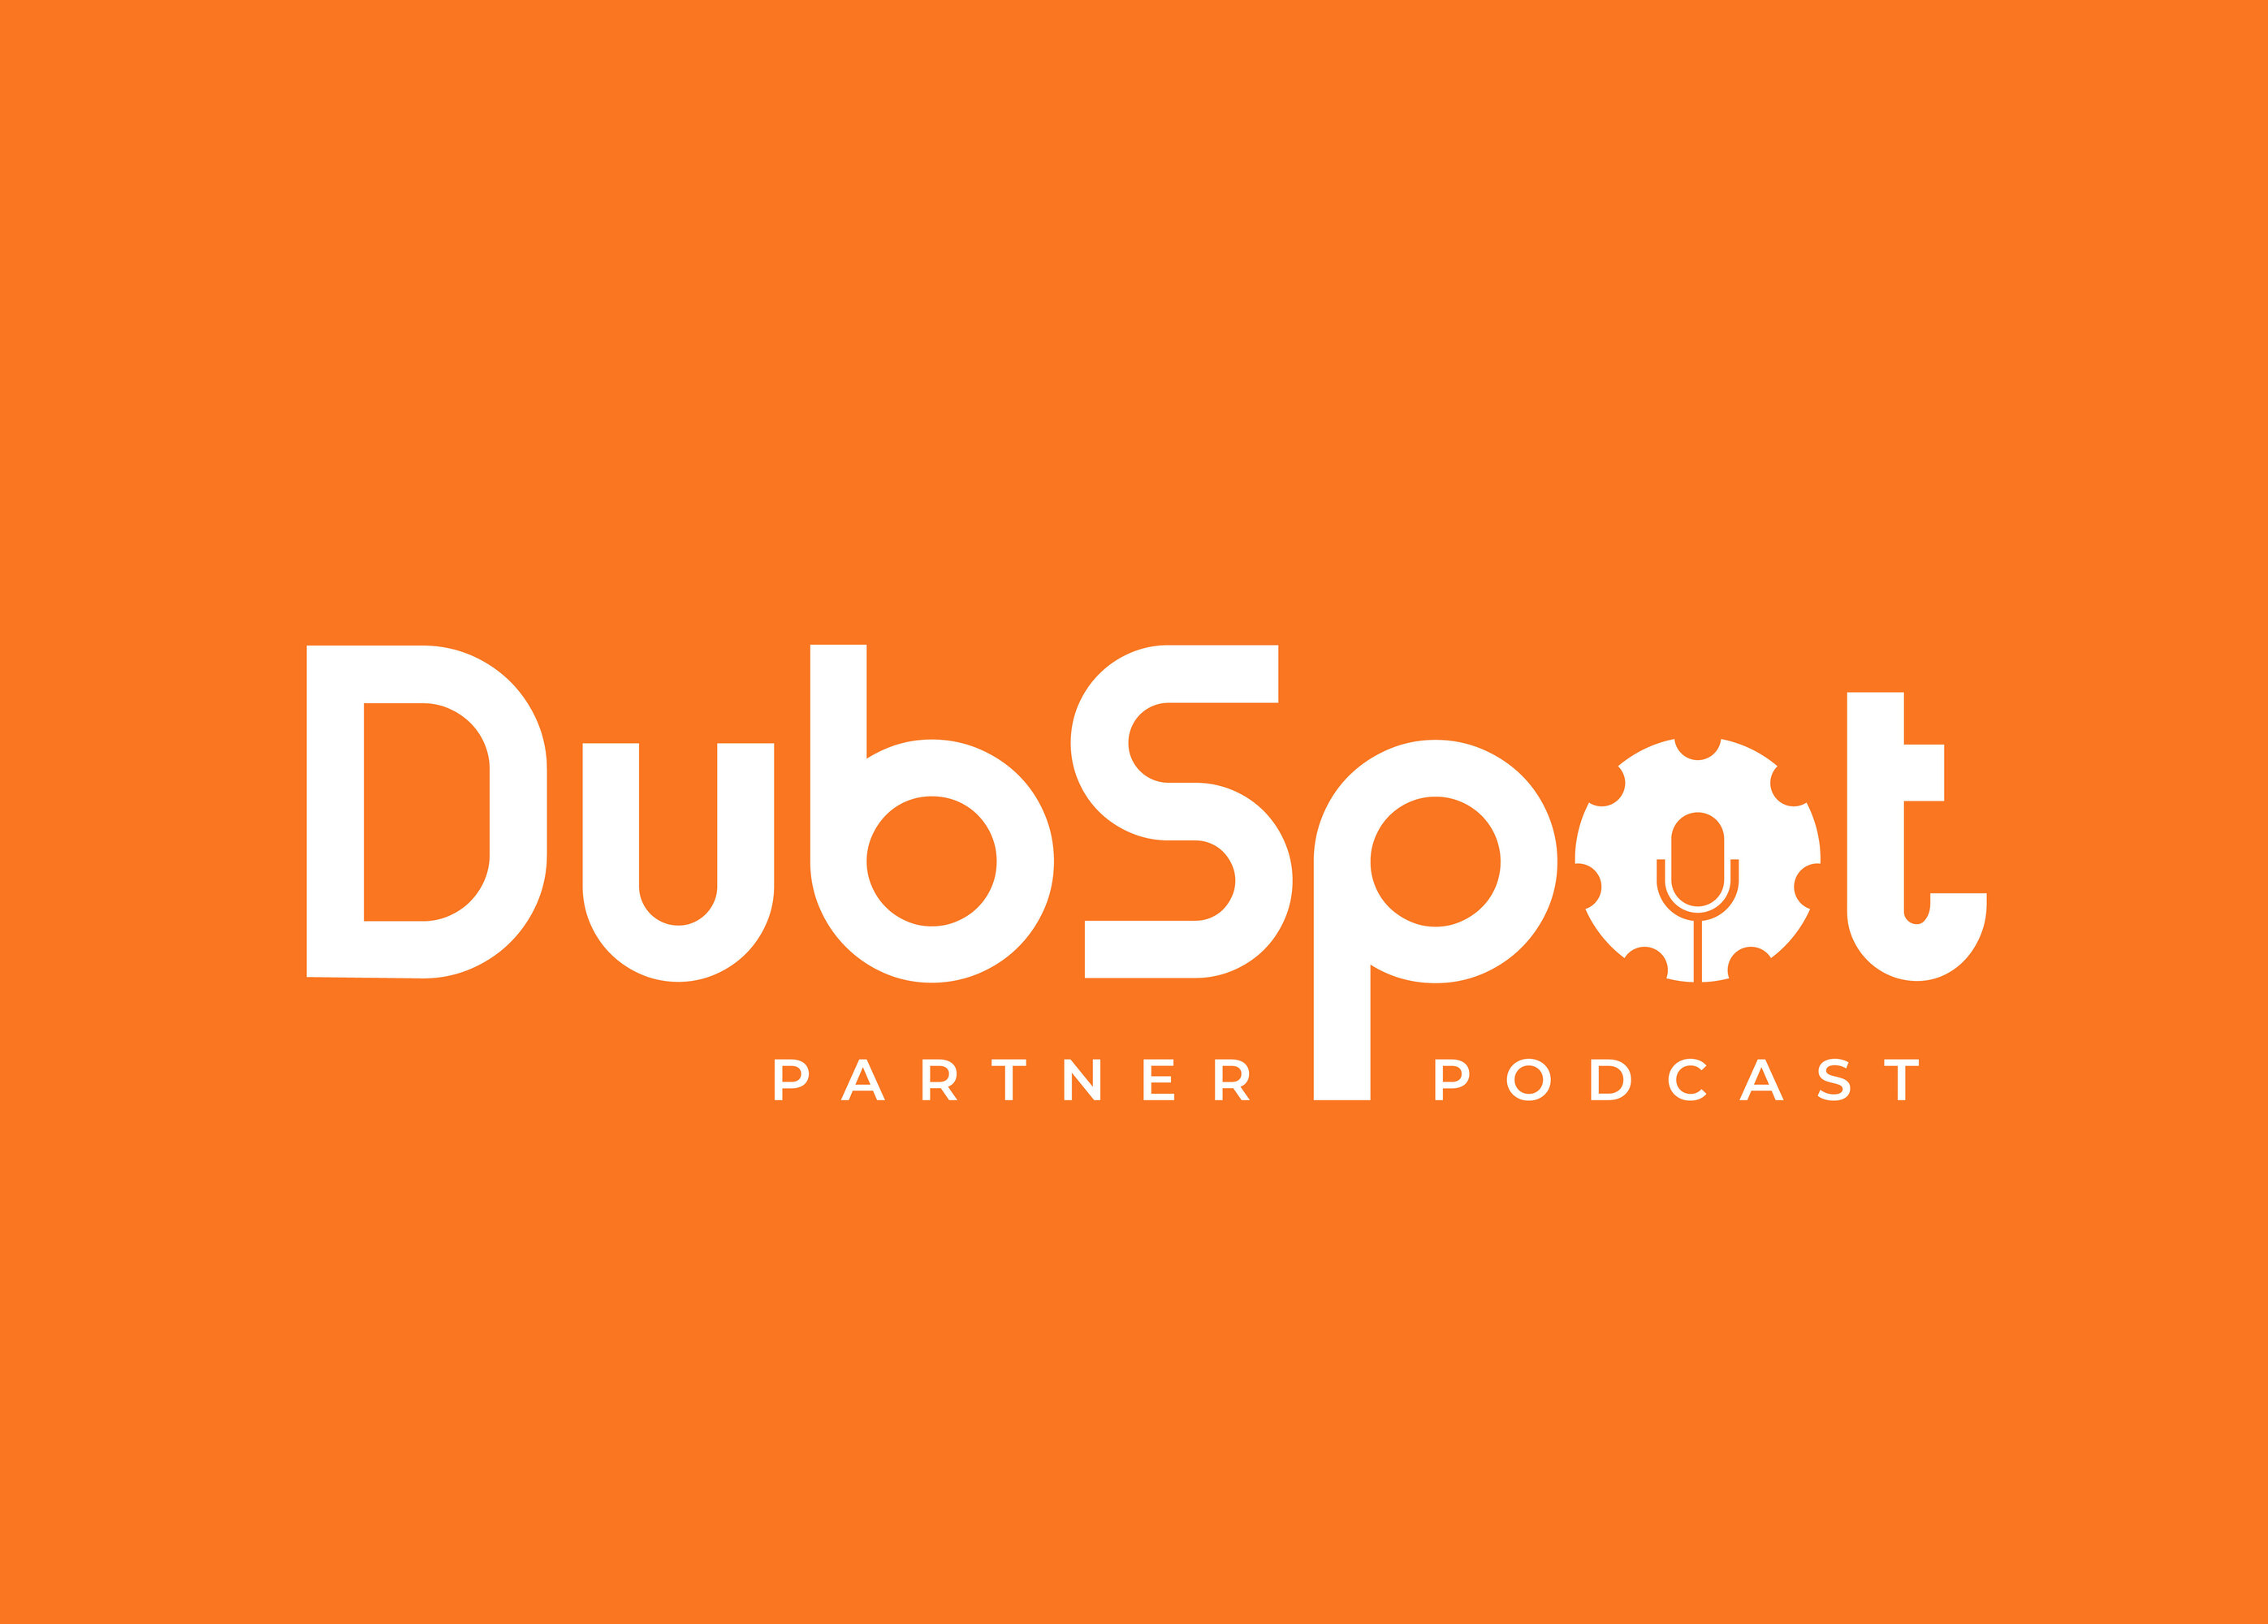 DubSpot Partner Podcast